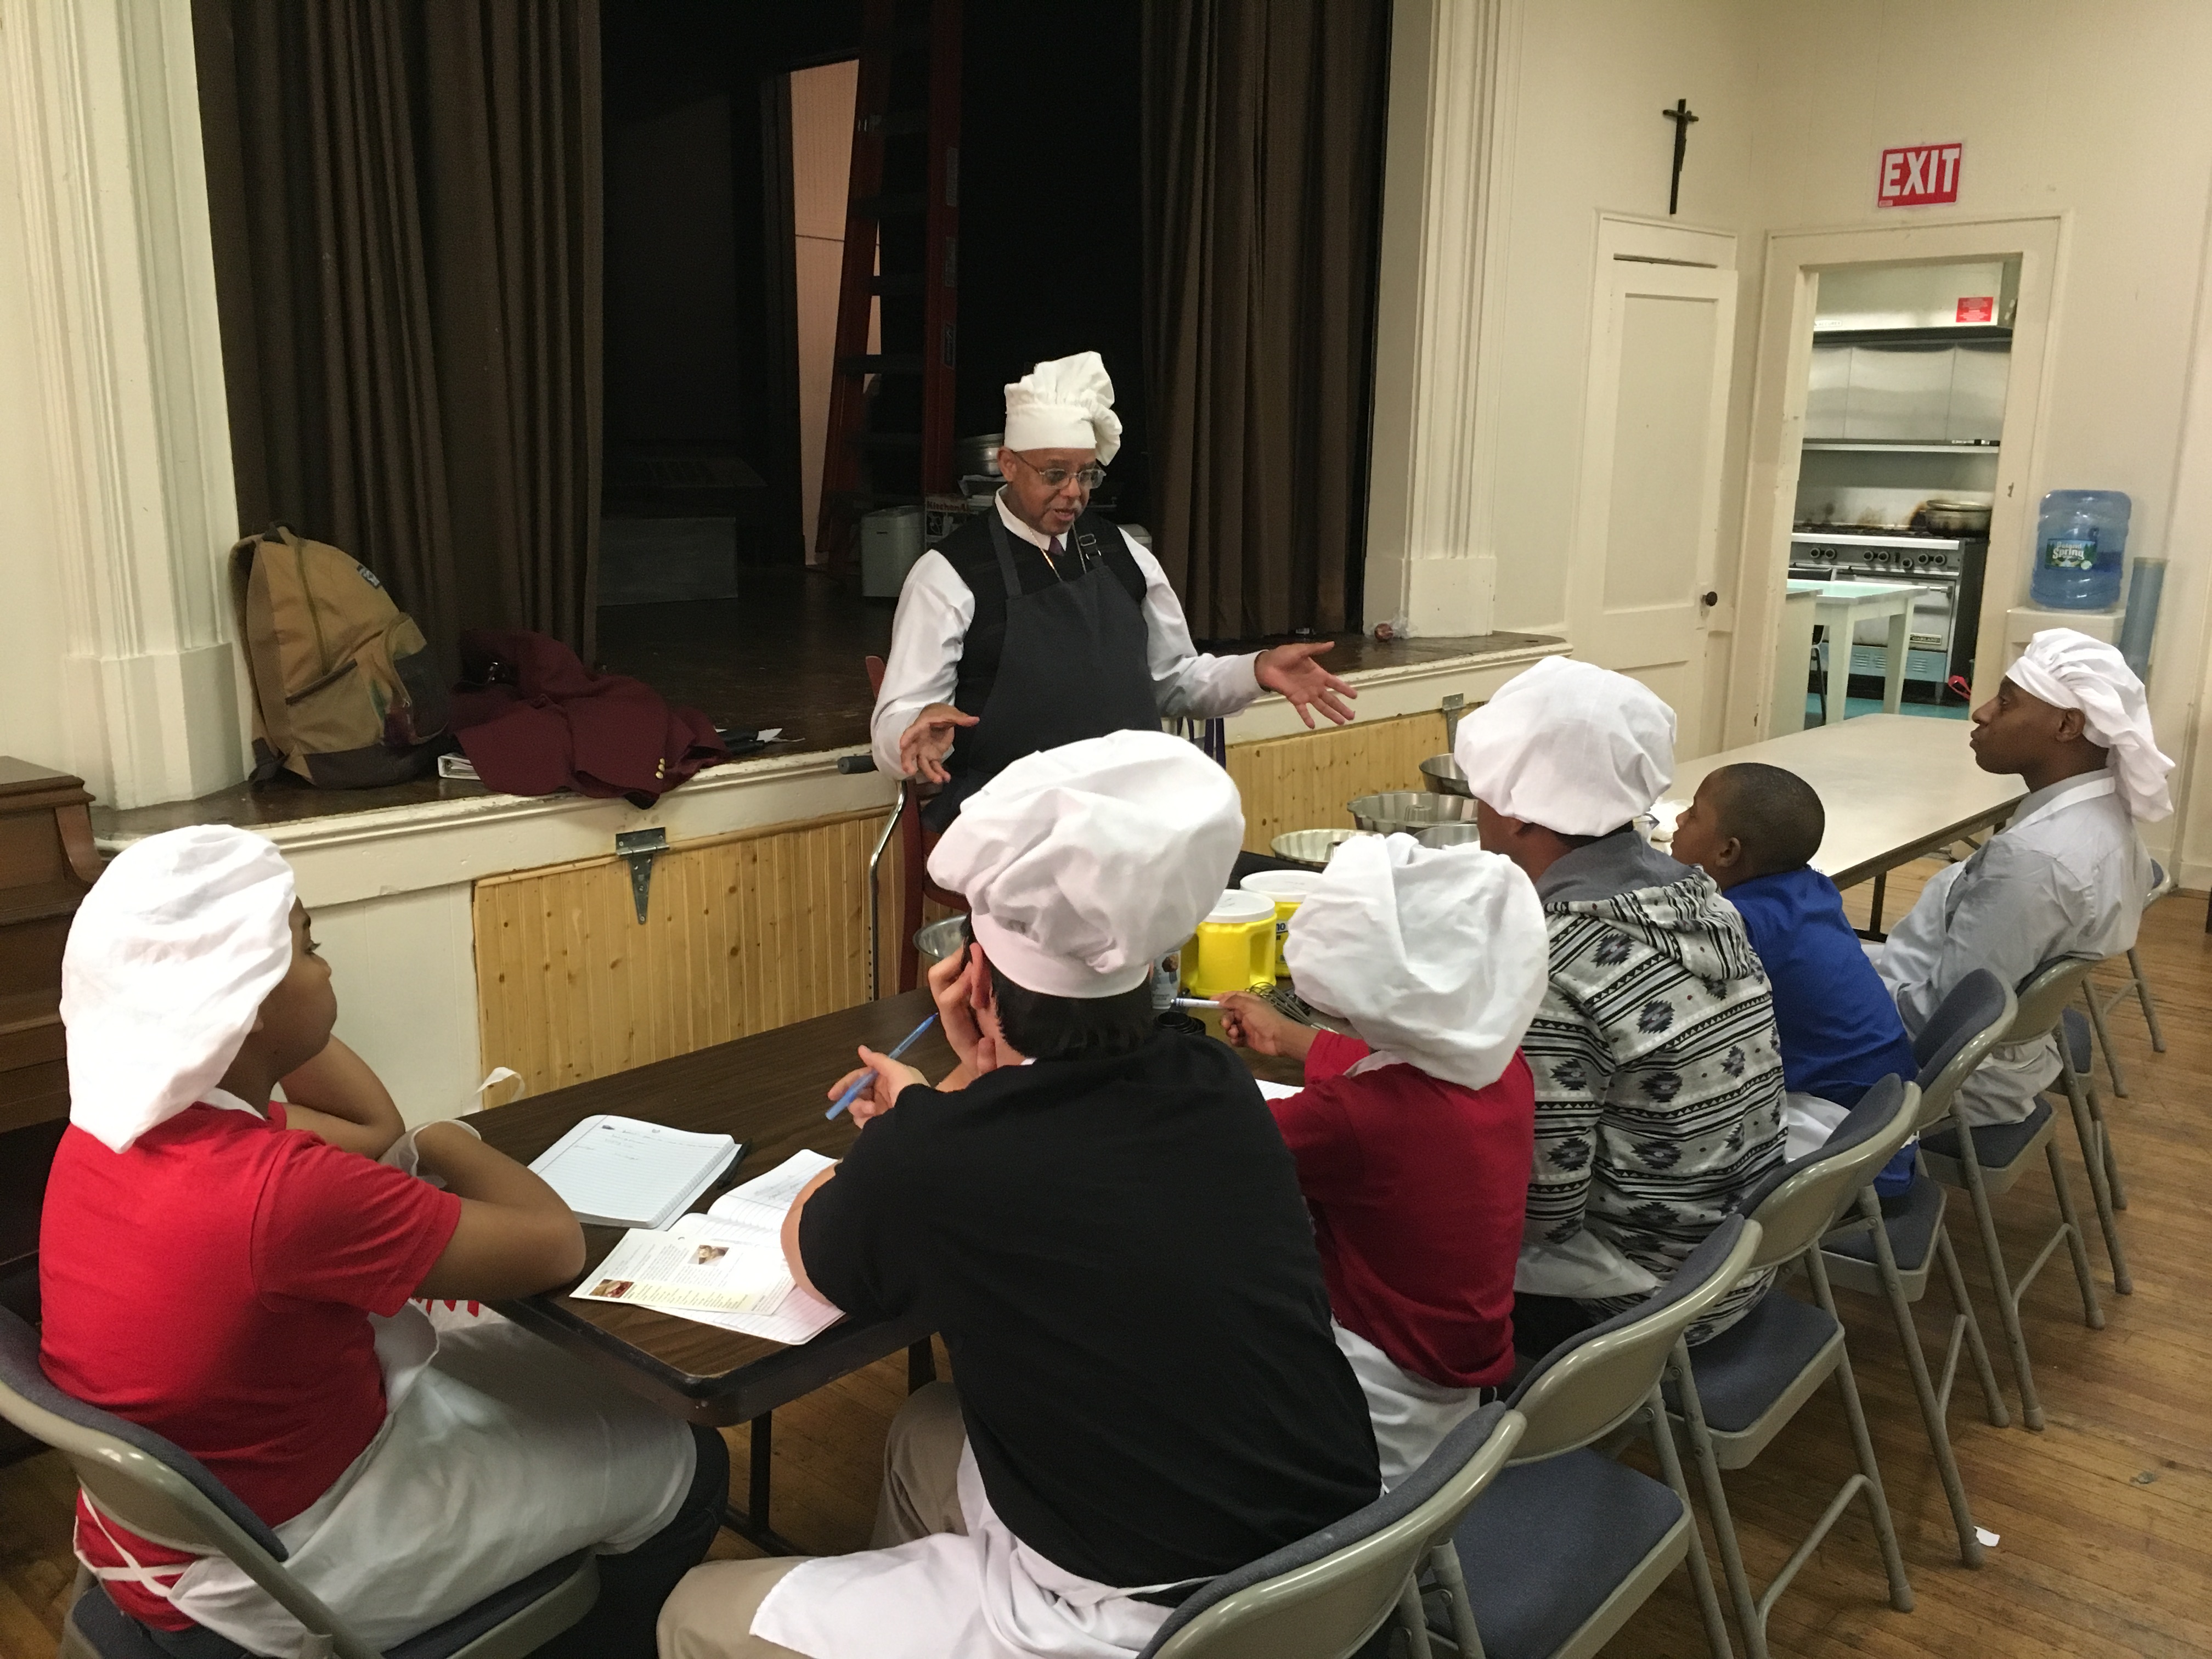 Eric Petersen of St. Paul's teaches a kitchen skills class.